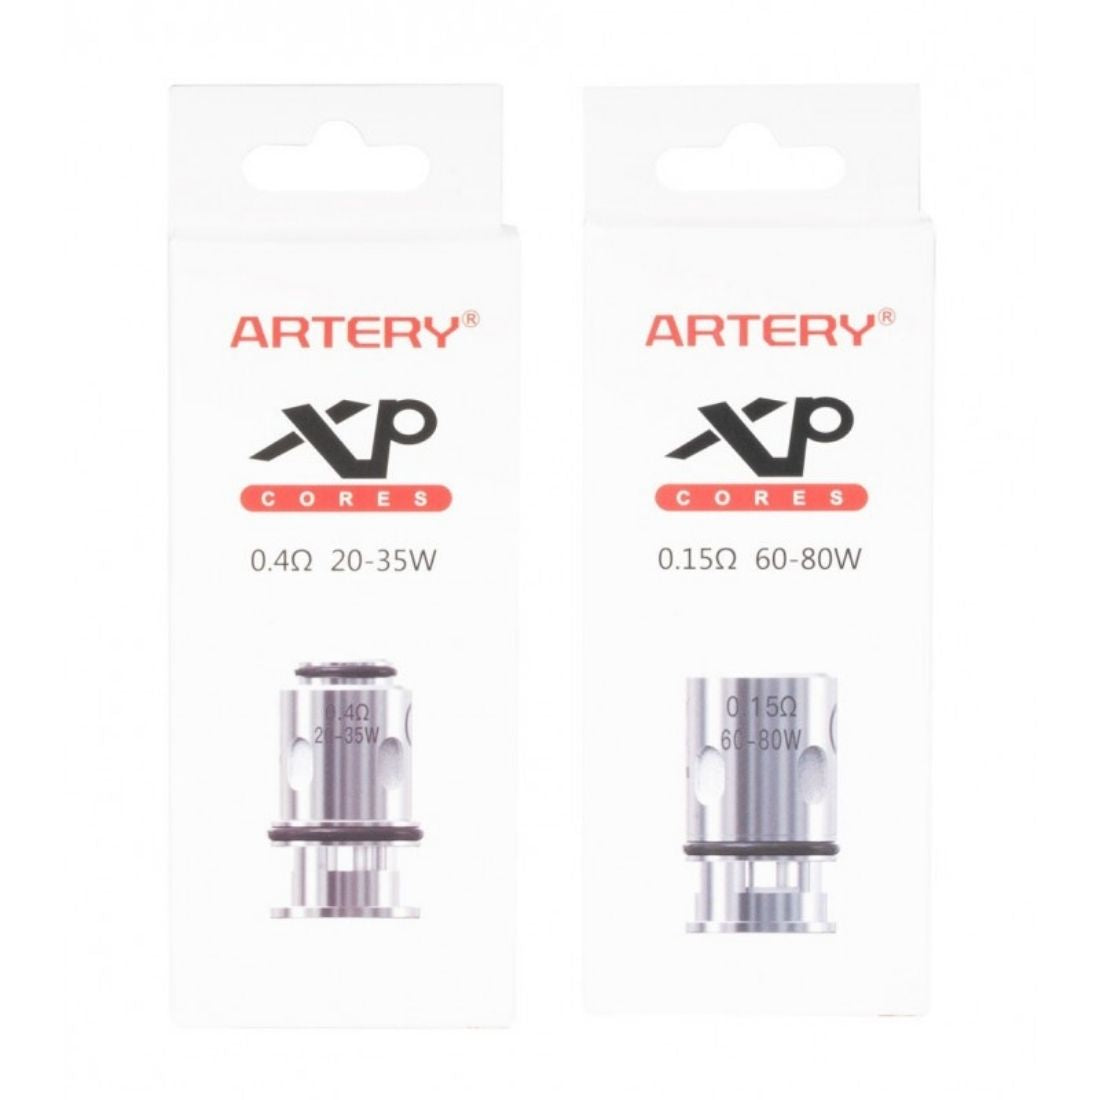 Artery GT XP Coil